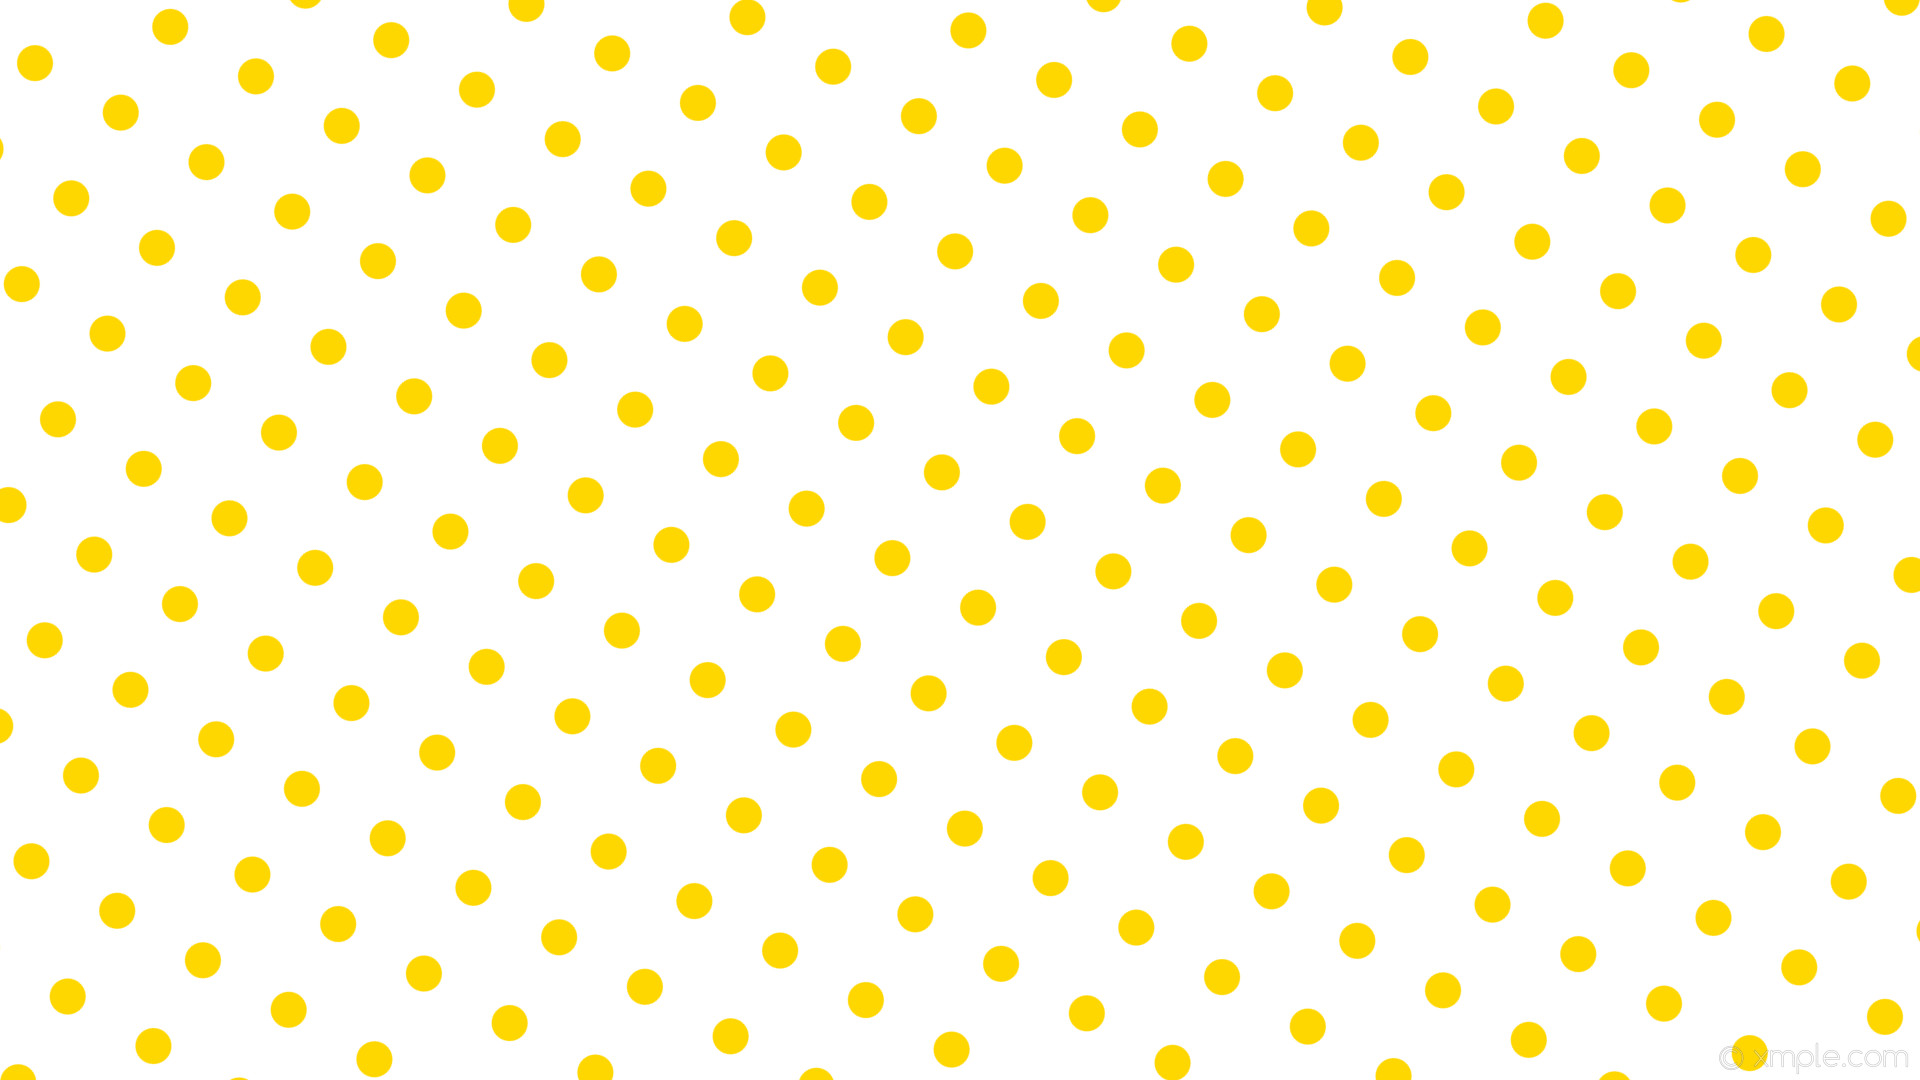 wallpaper yellow polka white spots dots gold #ffffff #ffd700 240Â° 36px 99px